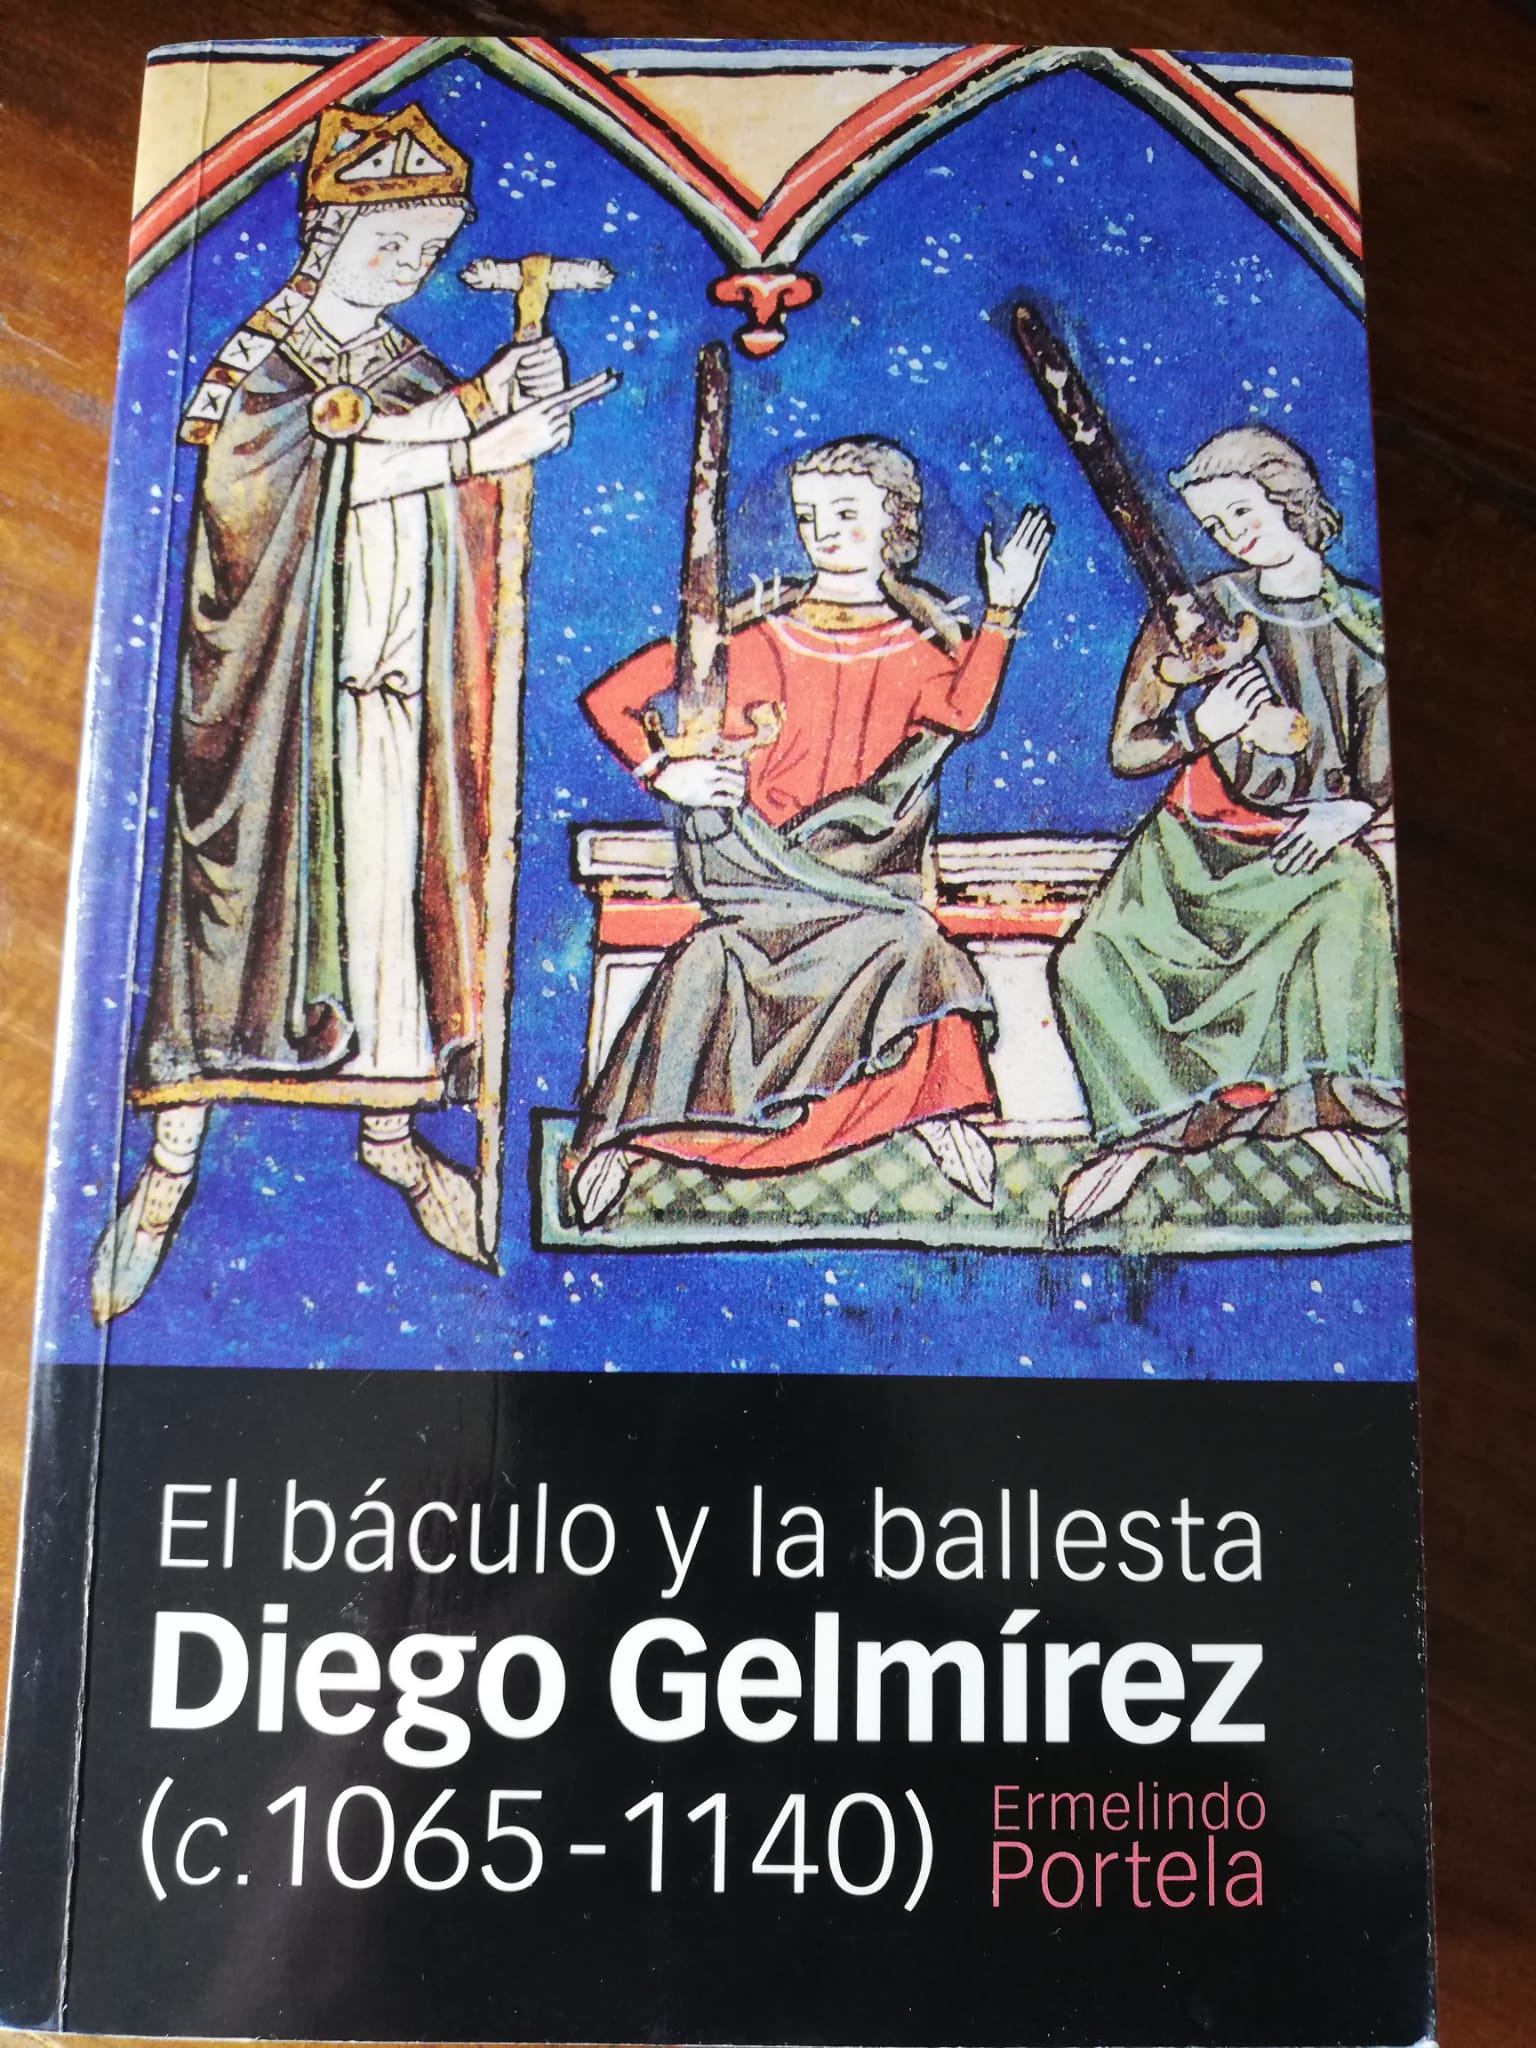 Alfonso Sánchez on Twitter: "Las #biografía histórica es un género con doble naturaleza, historiográfica o literaria. Esta es una de mis favoritas. la del arzobispo Diego Gelmírez, realizada por uno de